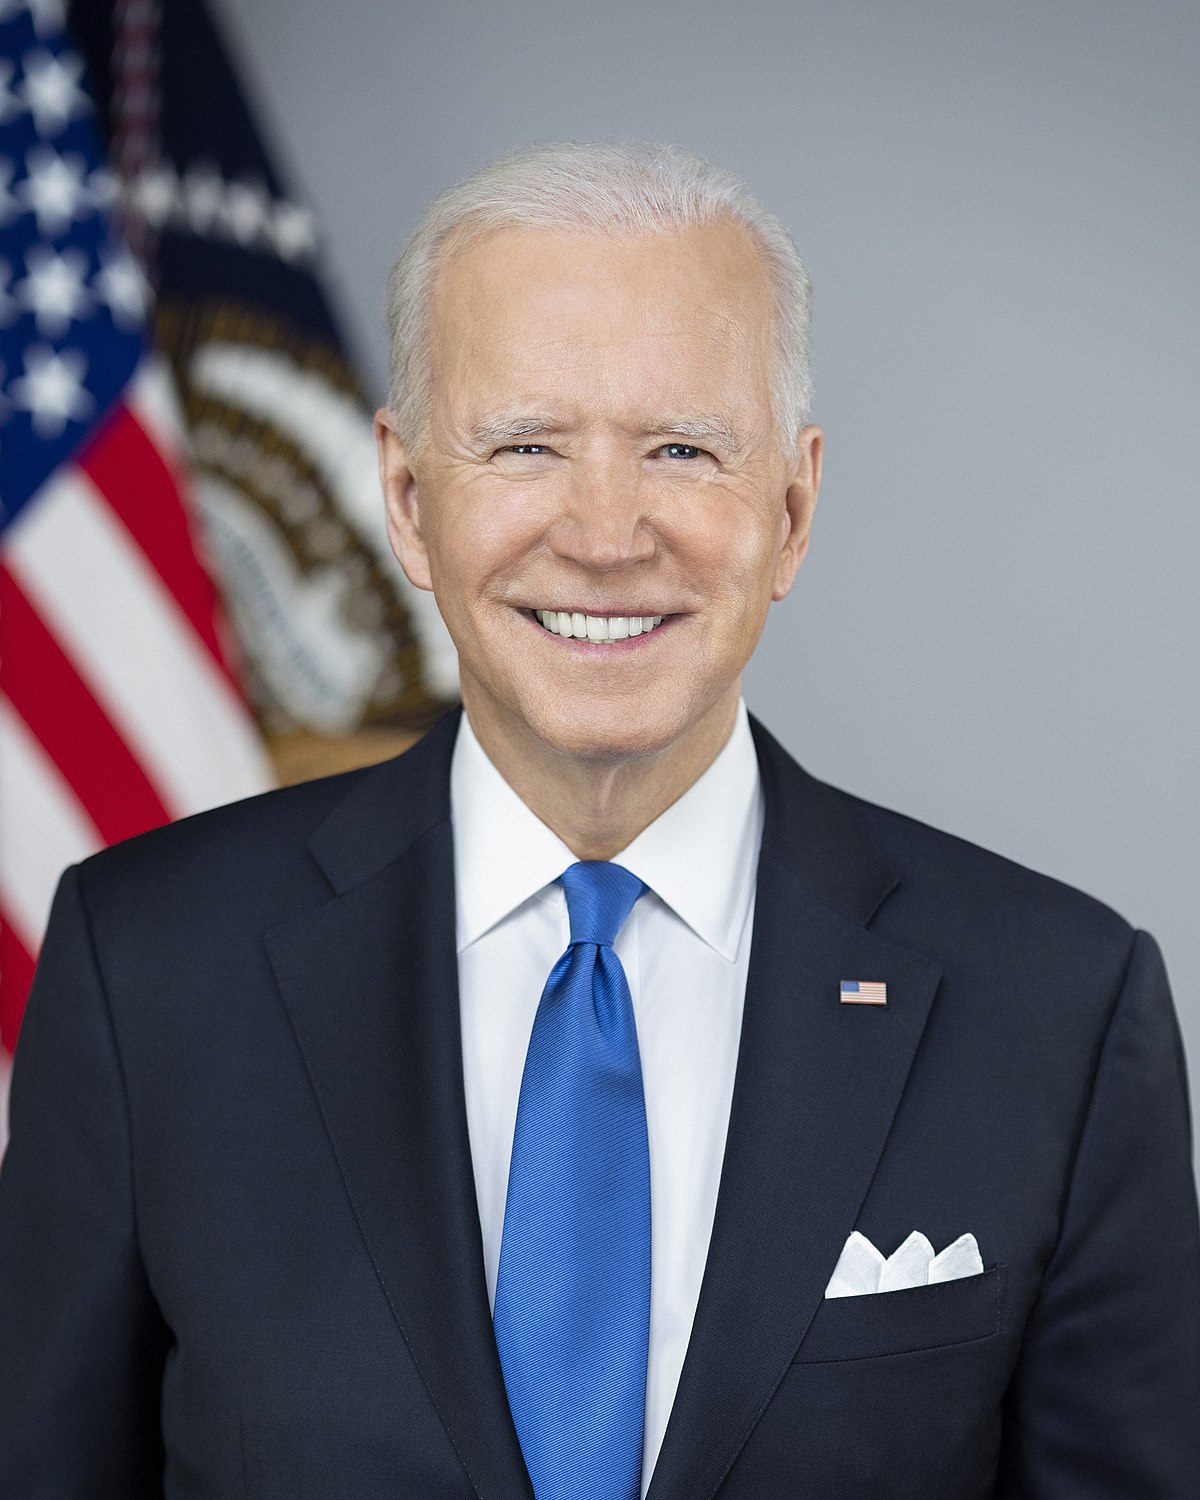 Joe_Biden_presidential_portrait